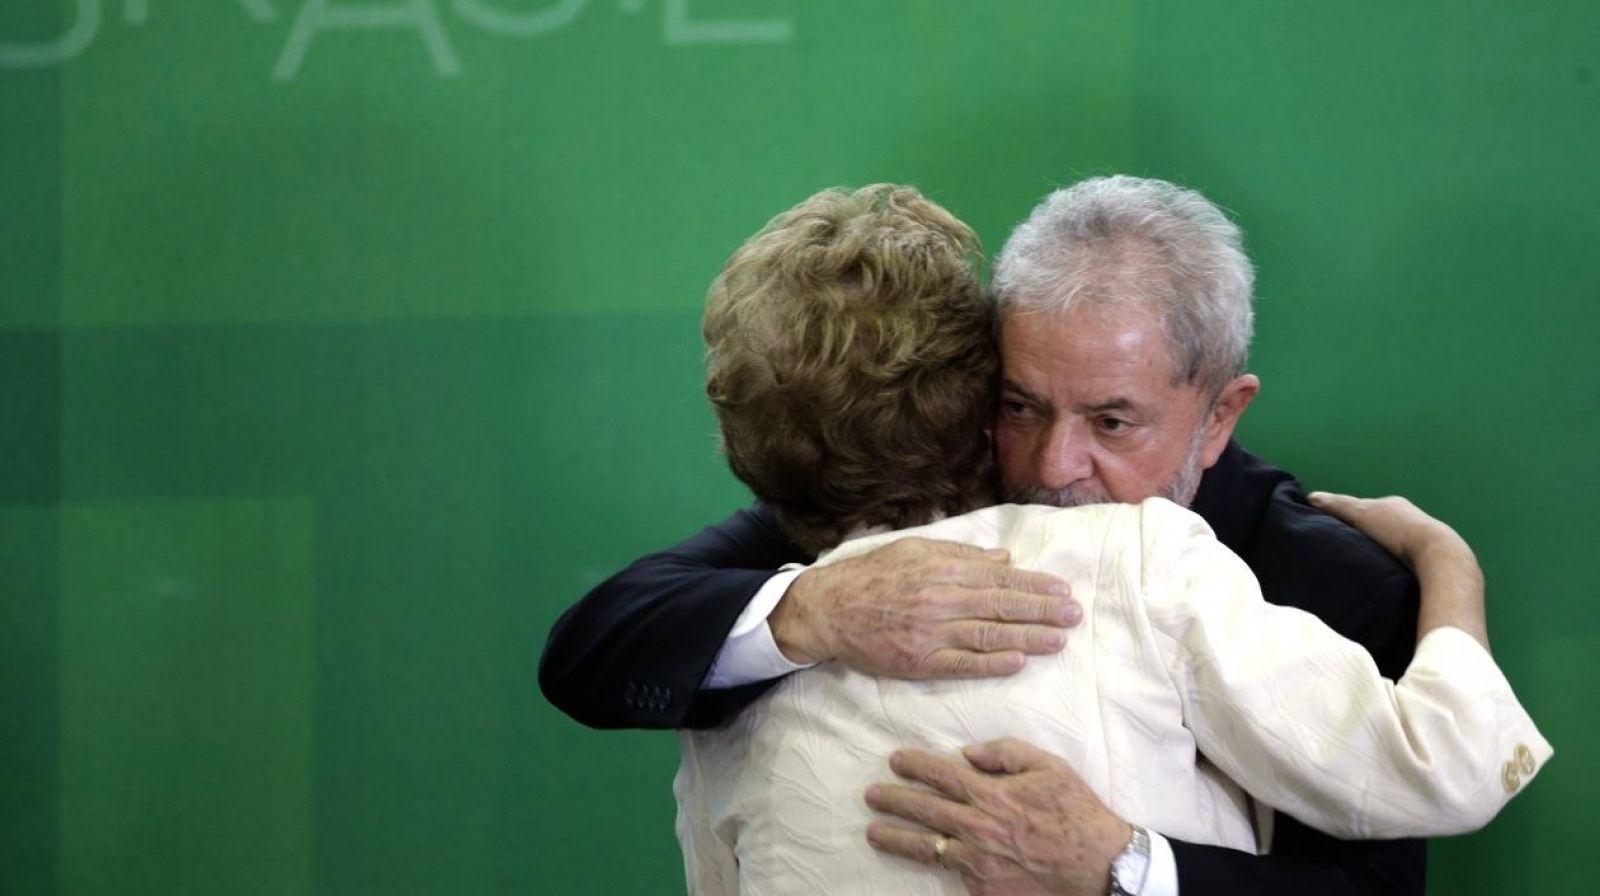 El expresidente brasileño Lula da Silva abraza a Dilma Rousseff, heredera de su legado socialista.